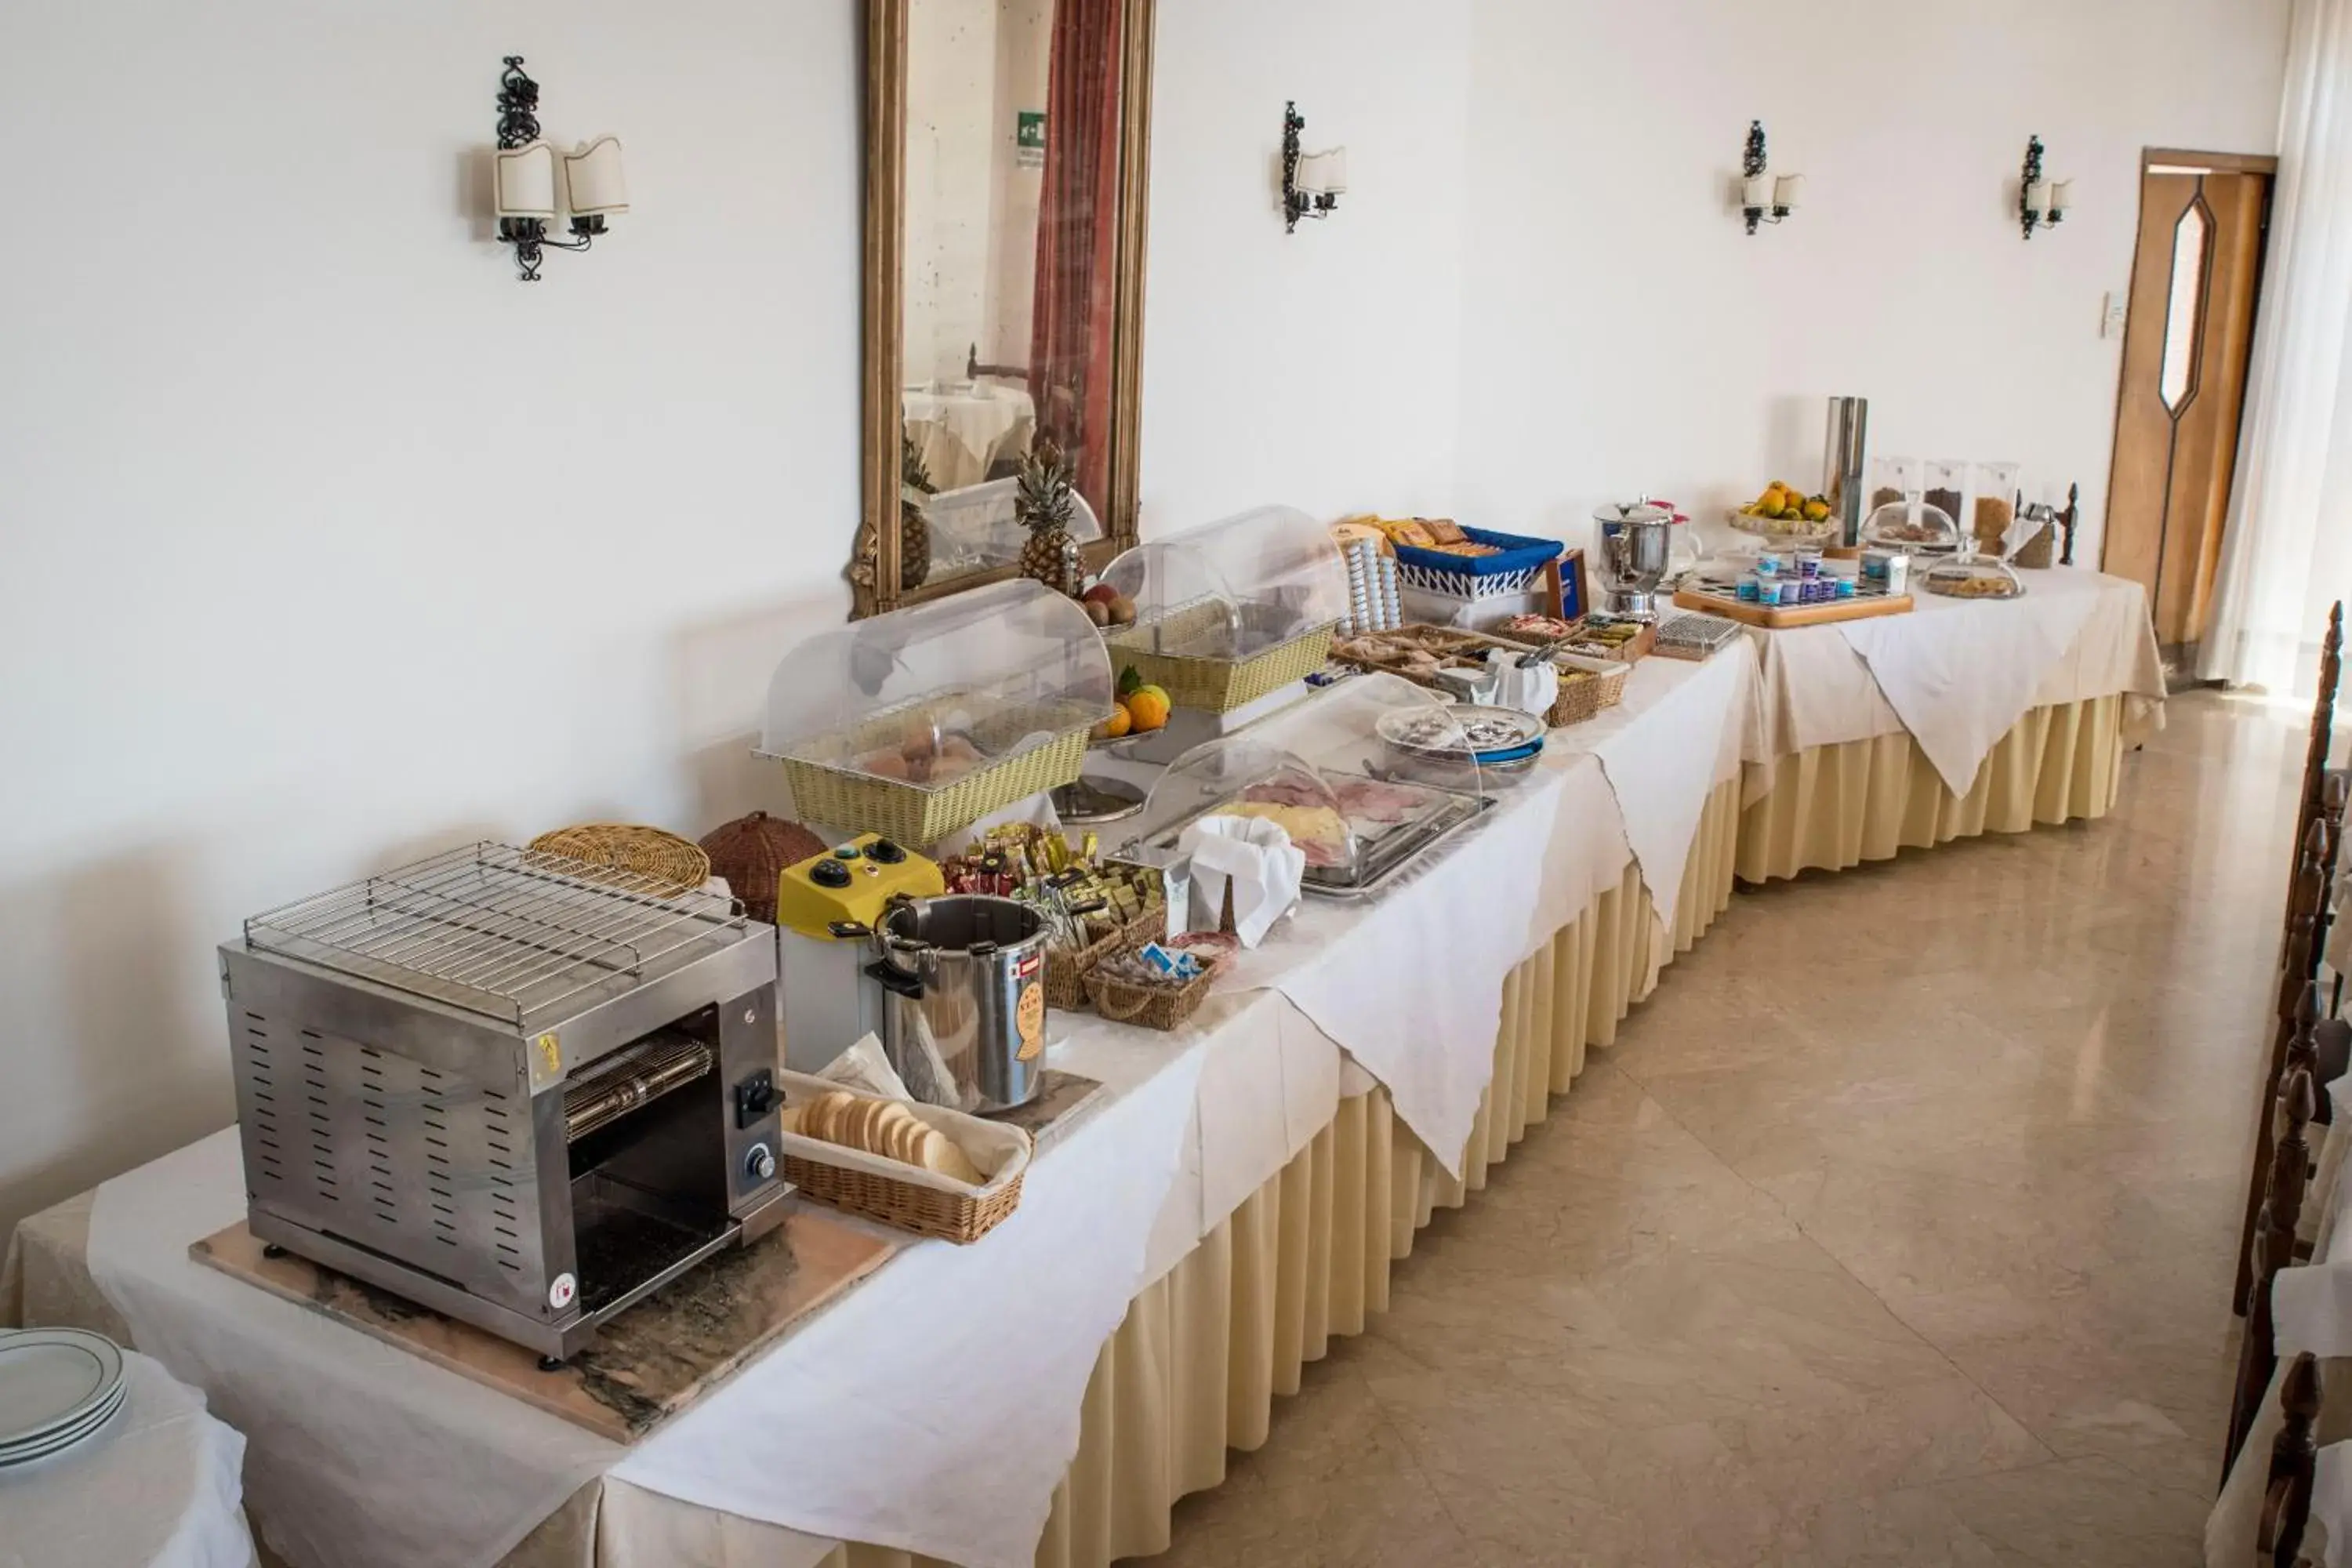 Buffet breakfast in Hotel Isola Bella